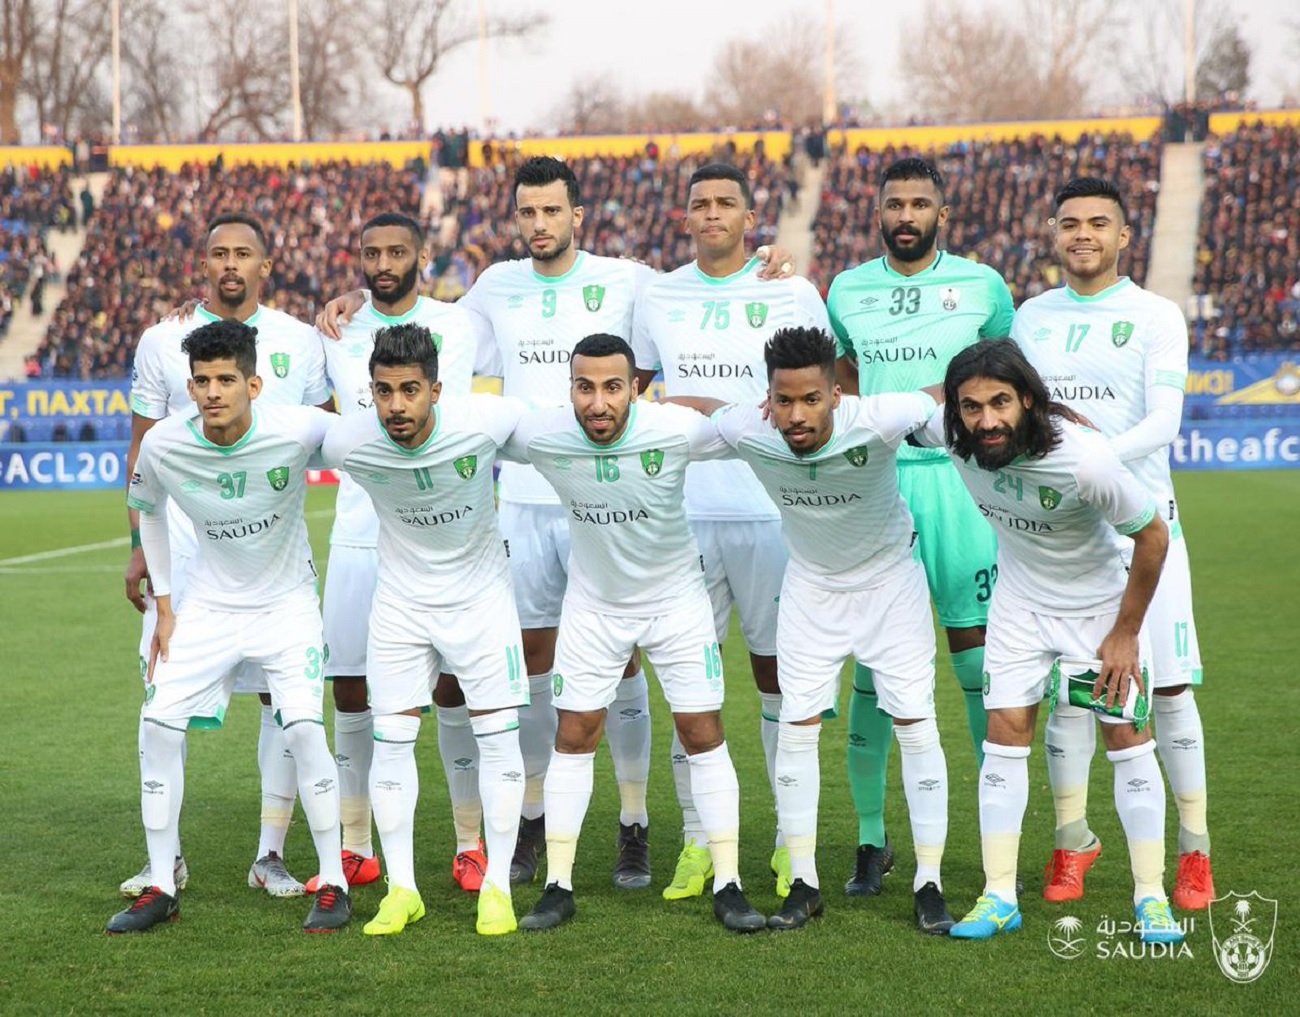 الأهلي السعودي يفقد رقمه المميز في مجموعات دوري أبطال آسيا